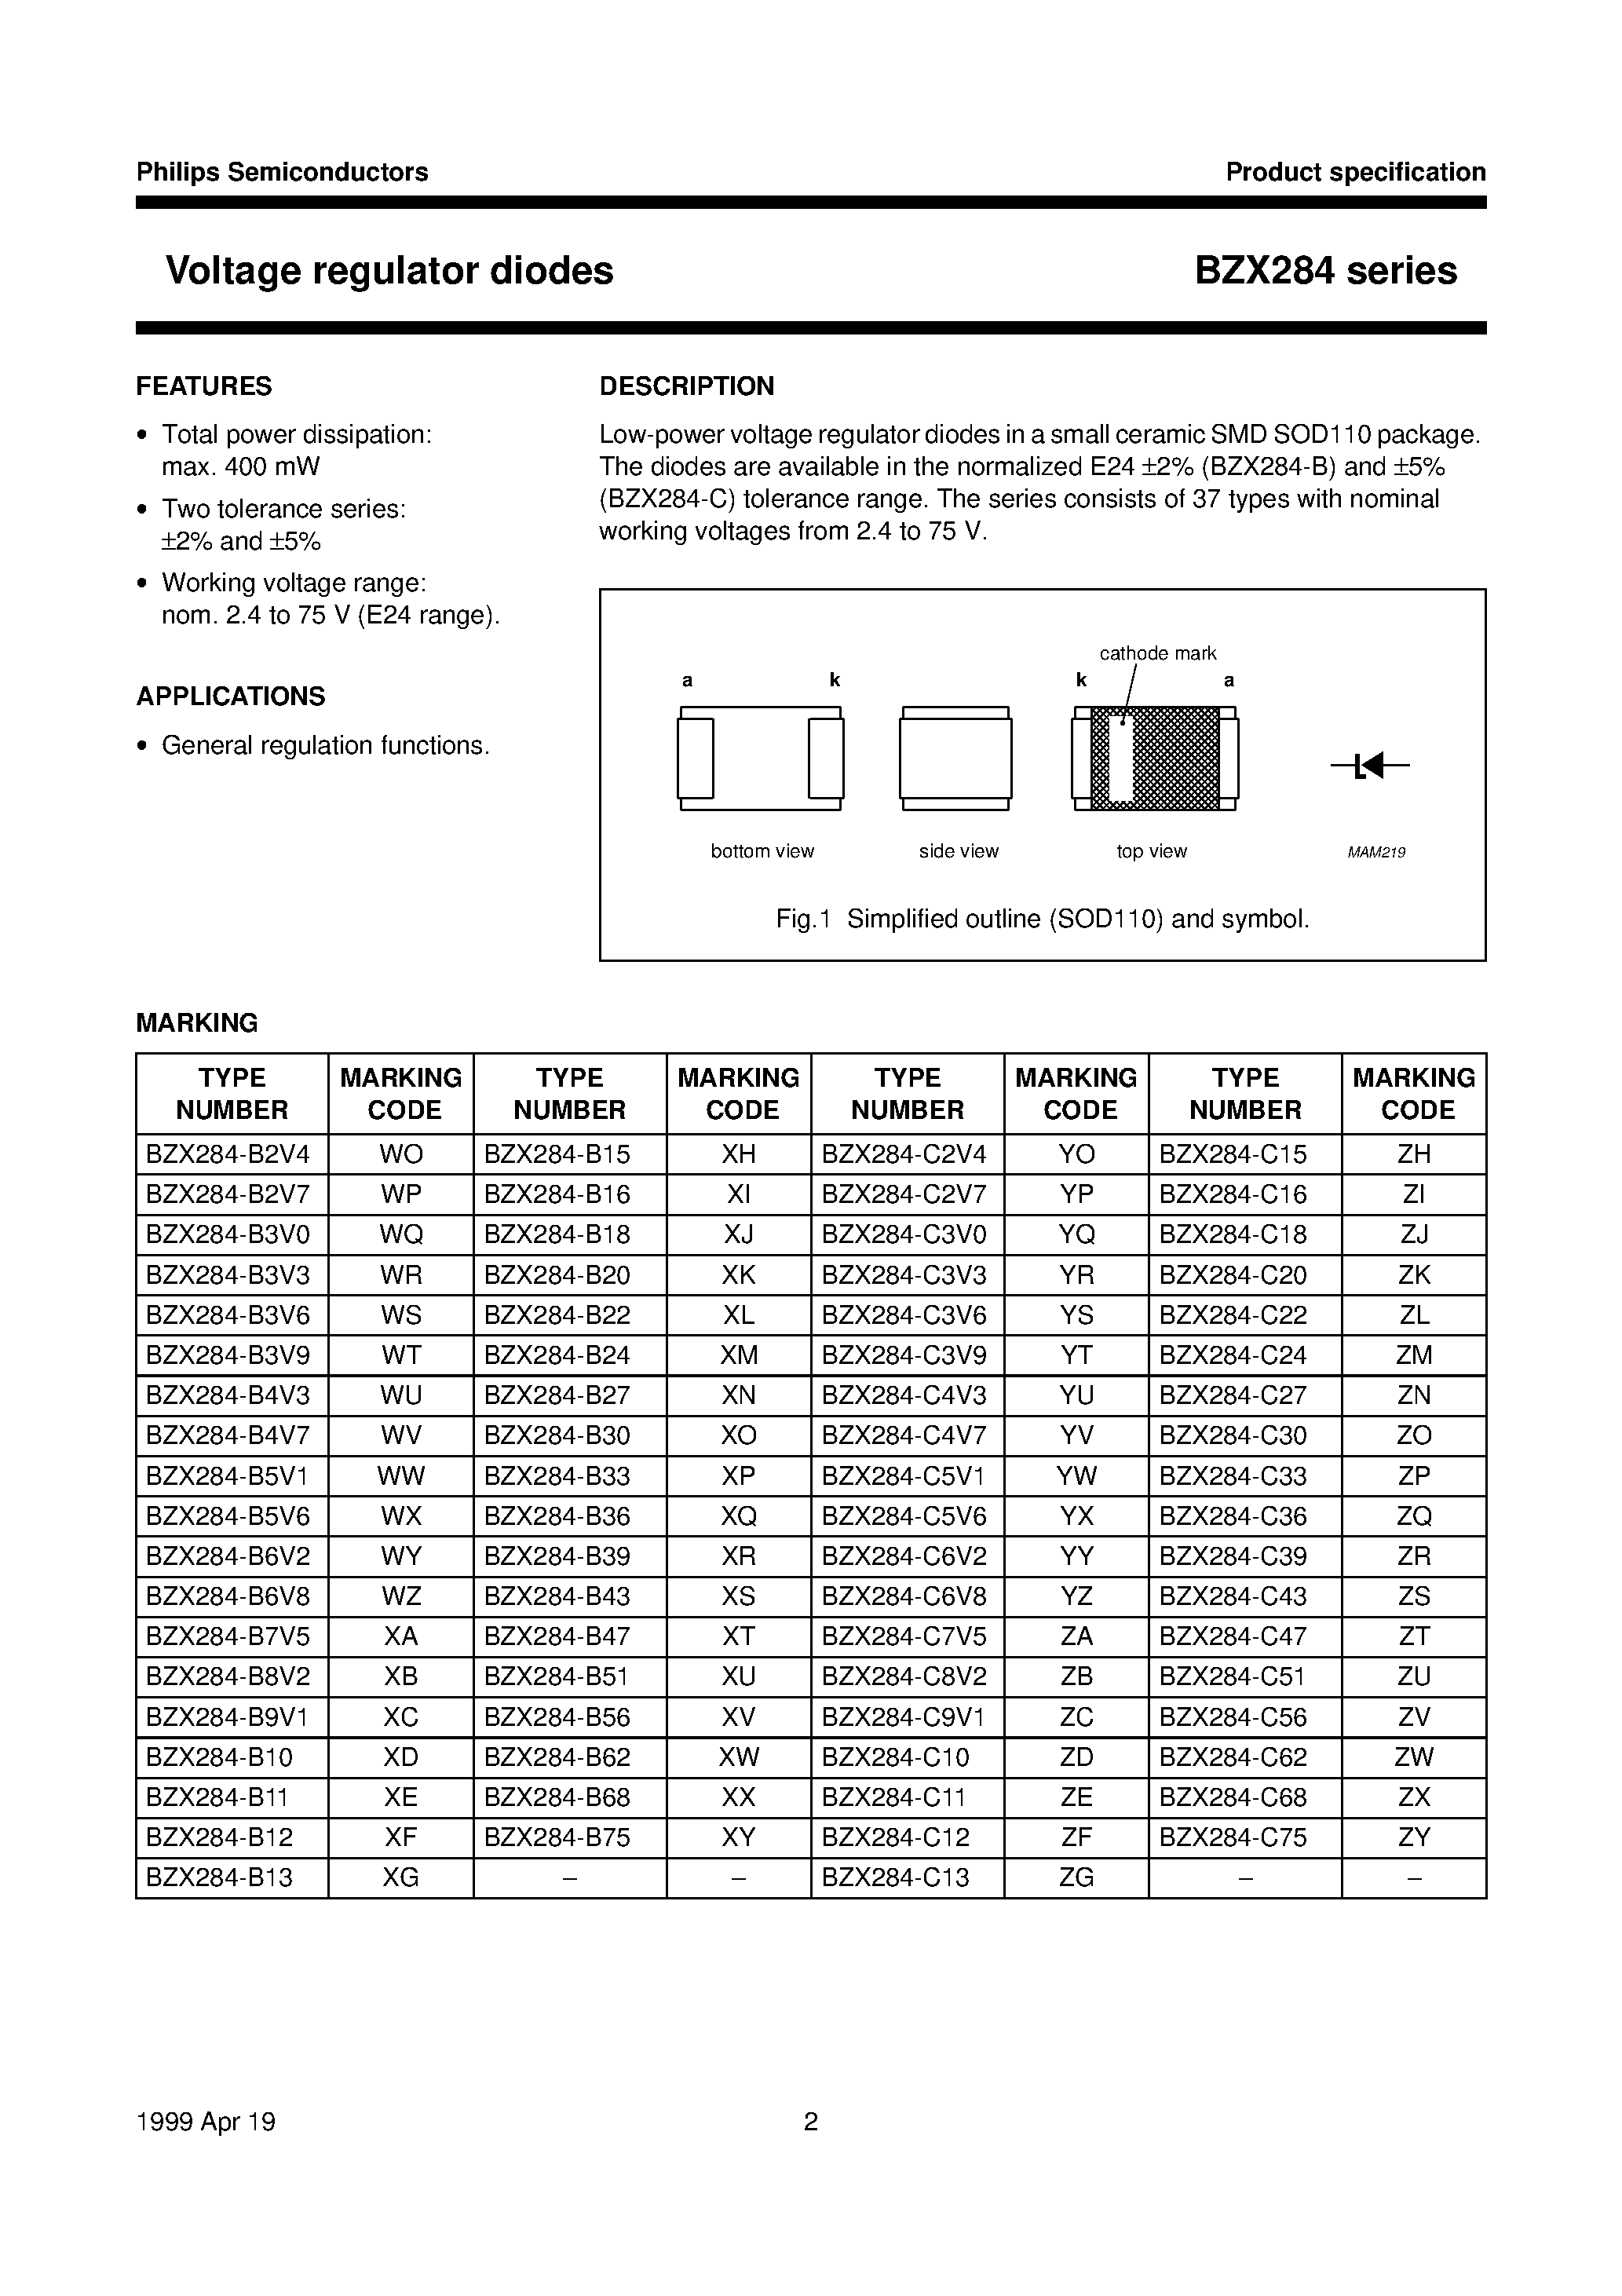 Datasheet BZX284-B13 - Voltage regulator diodes page 2